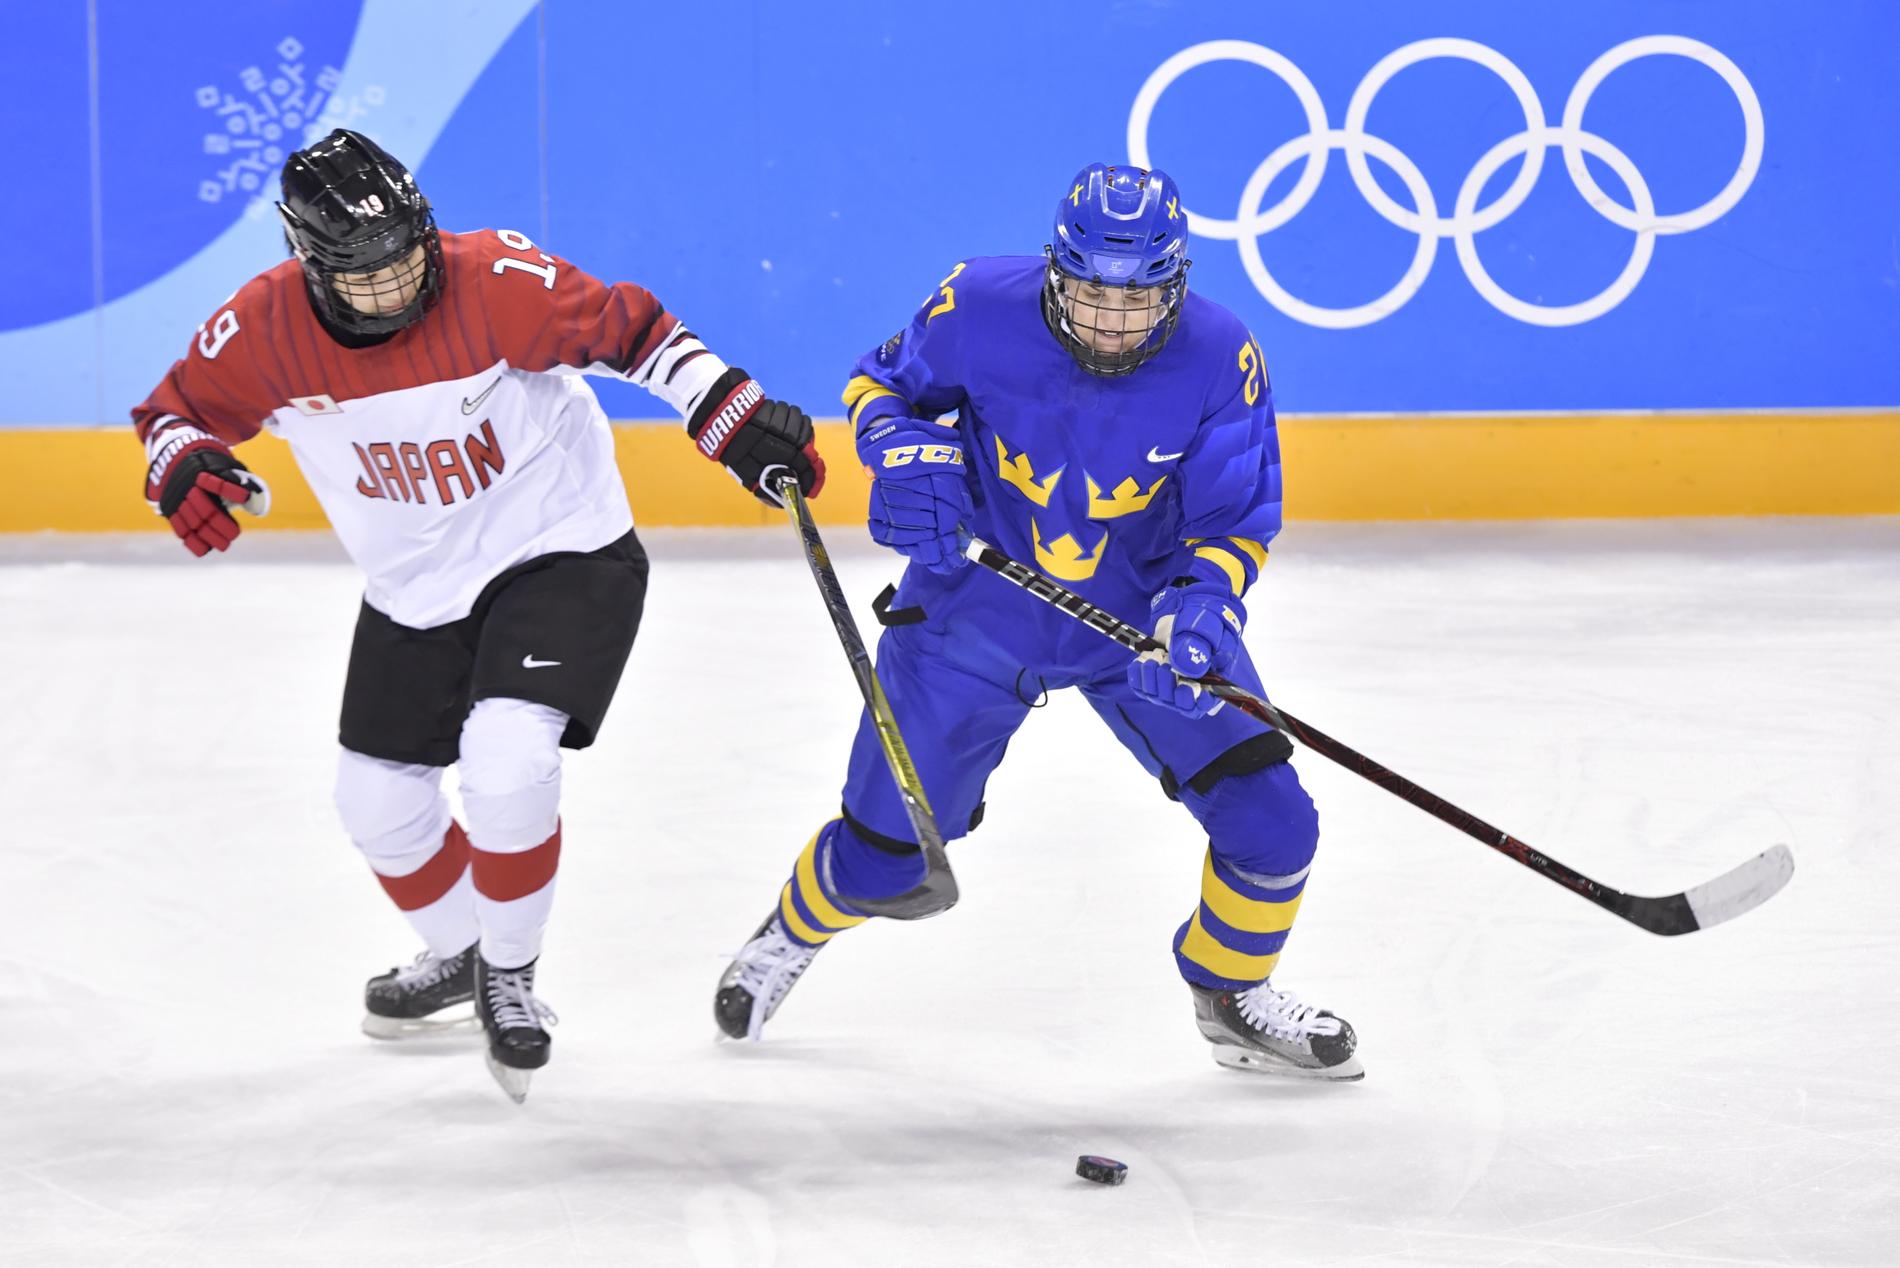 Damhockeyn utökas med två lag, till tio, vid OS i Peking 2022. Här kämpar Damkronornas Emma Nordin om pucken med en japanska i OS i Pyeongchang.